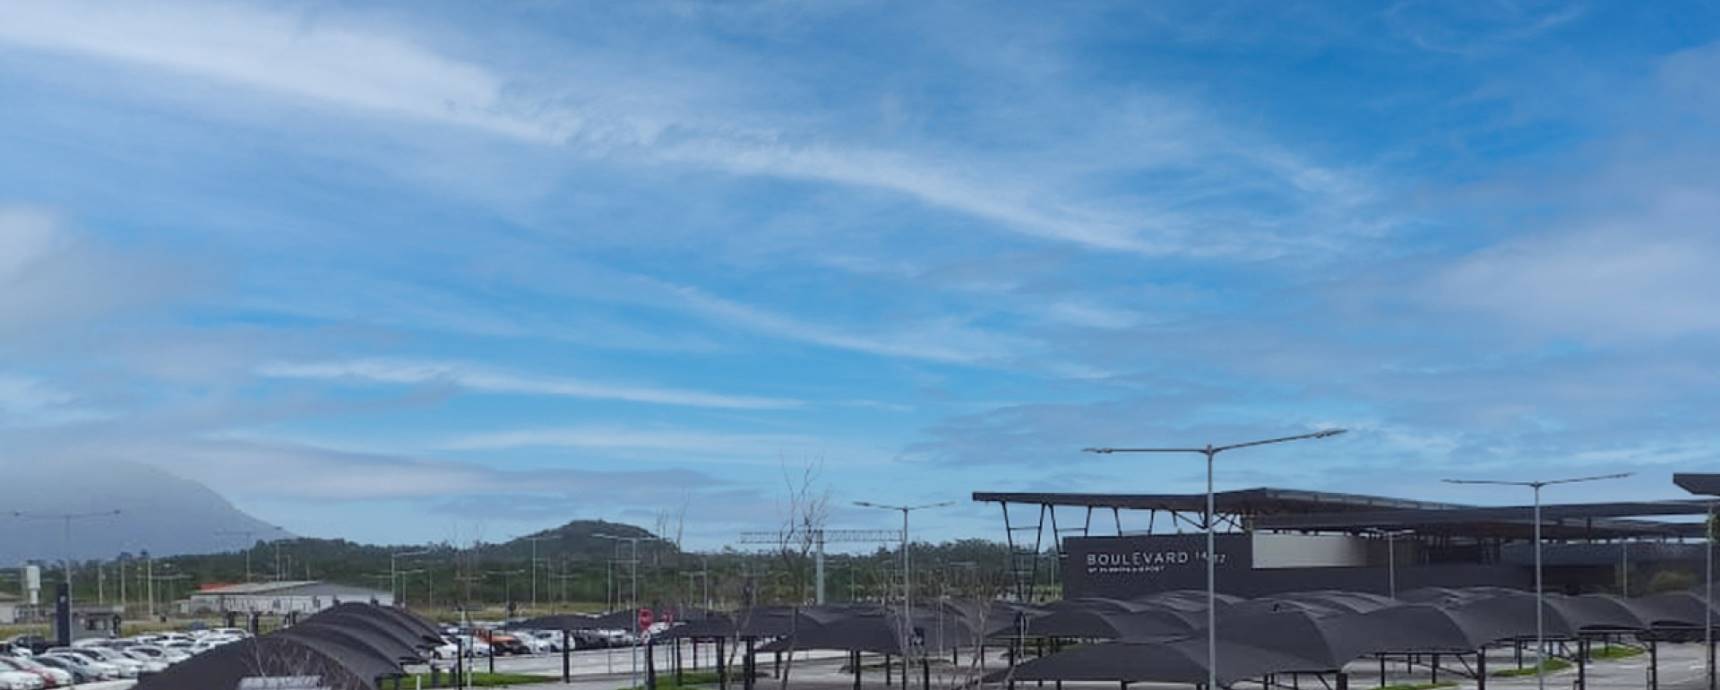 Aeroporto de Florianópolis agora tem estacionamento VIP